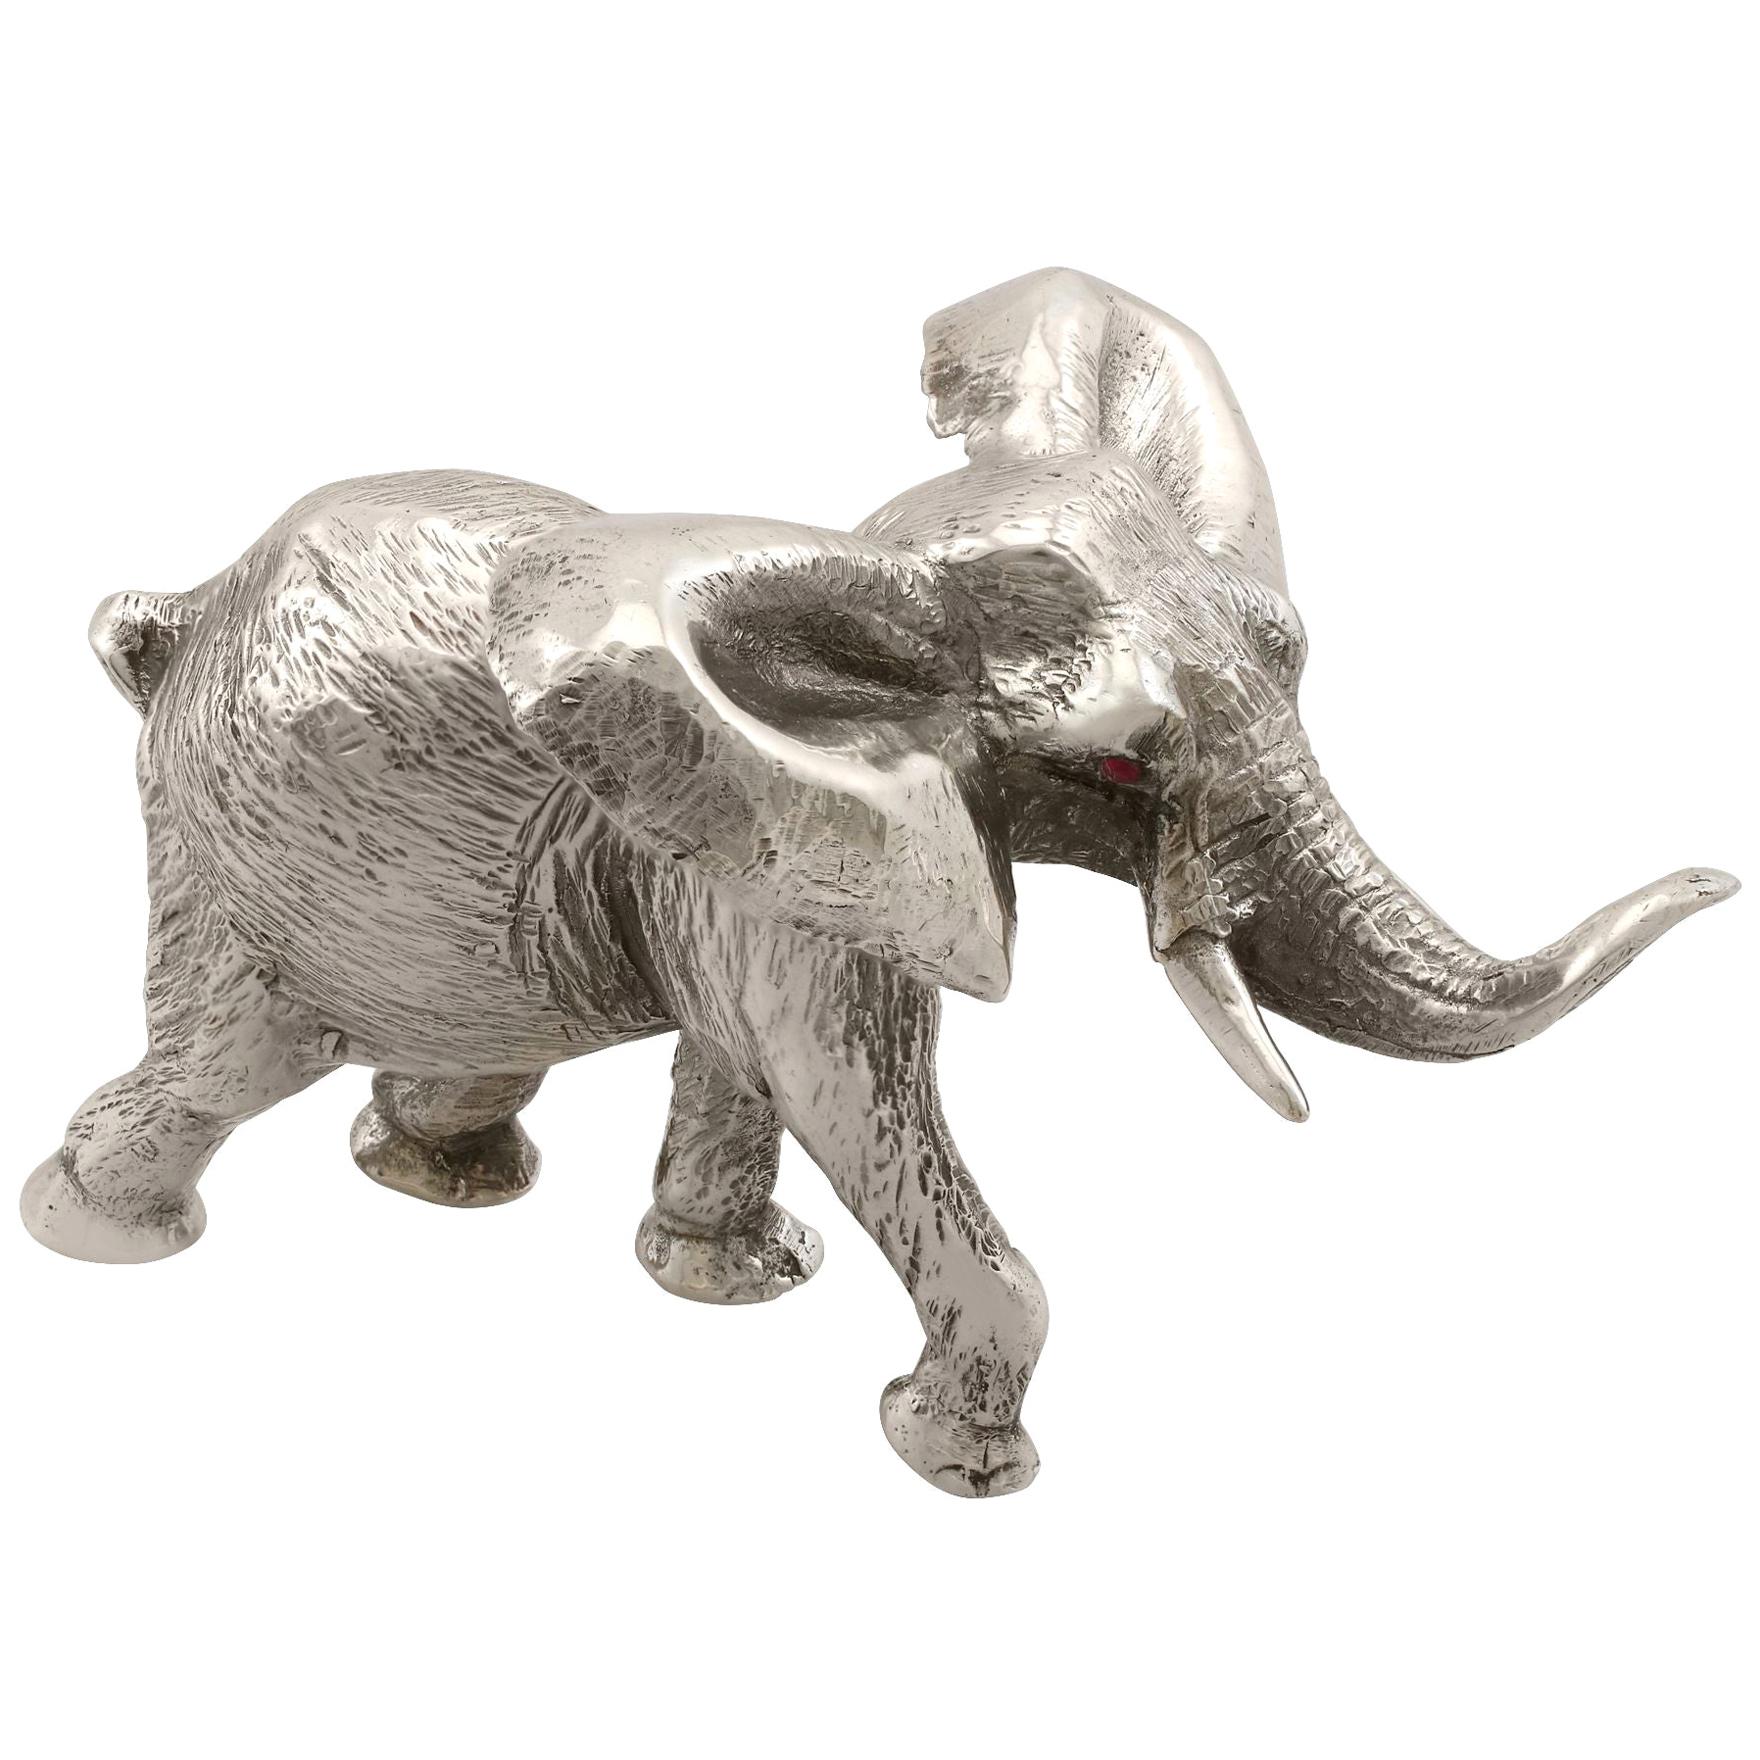 1973 Vintage Sterling Silver Model Elephant